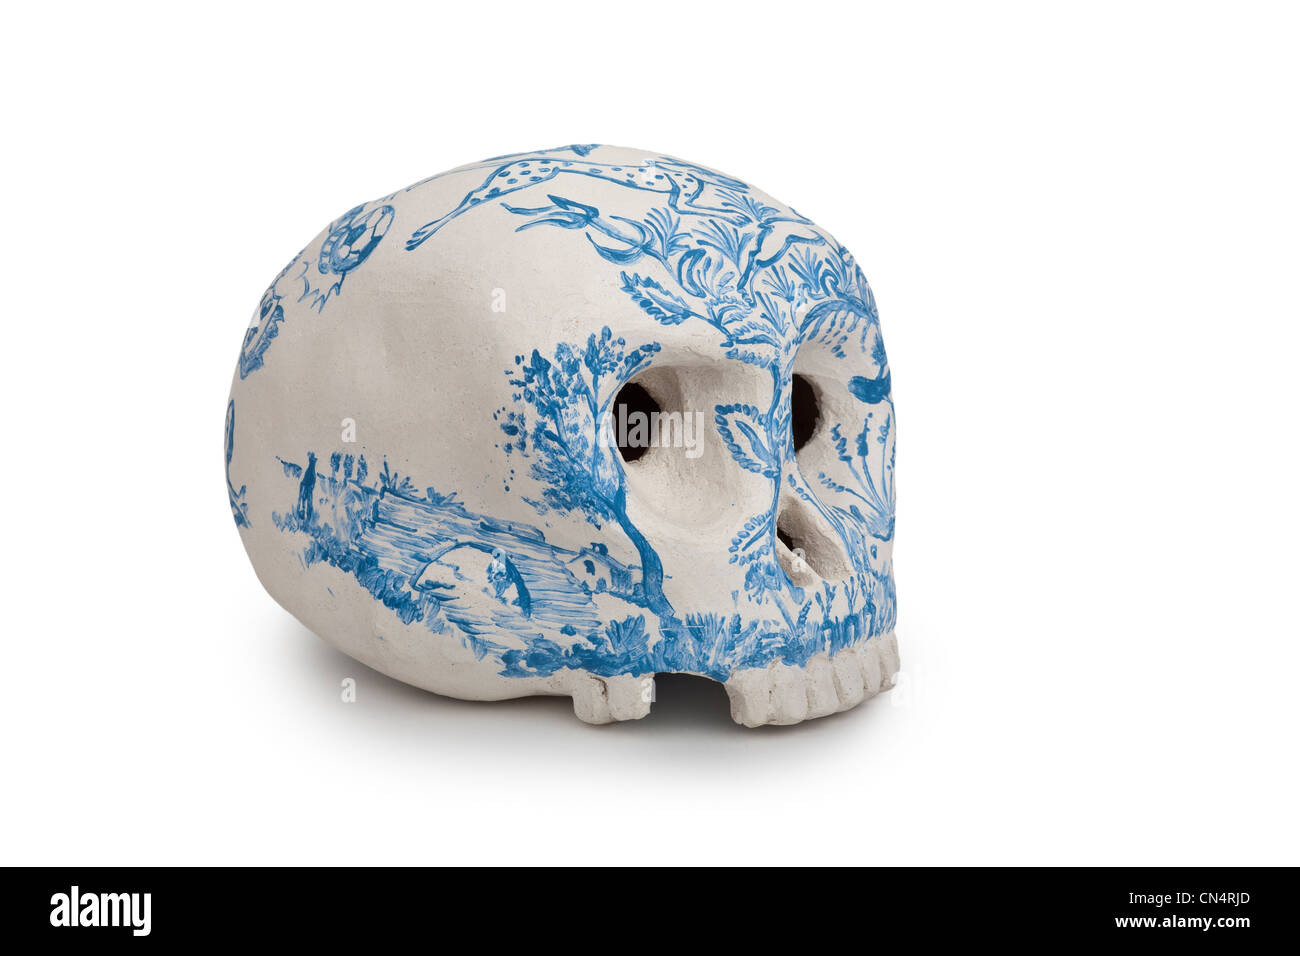 A human skull shaped sculpture of Jacques GALLON, ceramist. Sculpture en forme de crâne humain du céramiste Jacques GALLON. Stock Photo